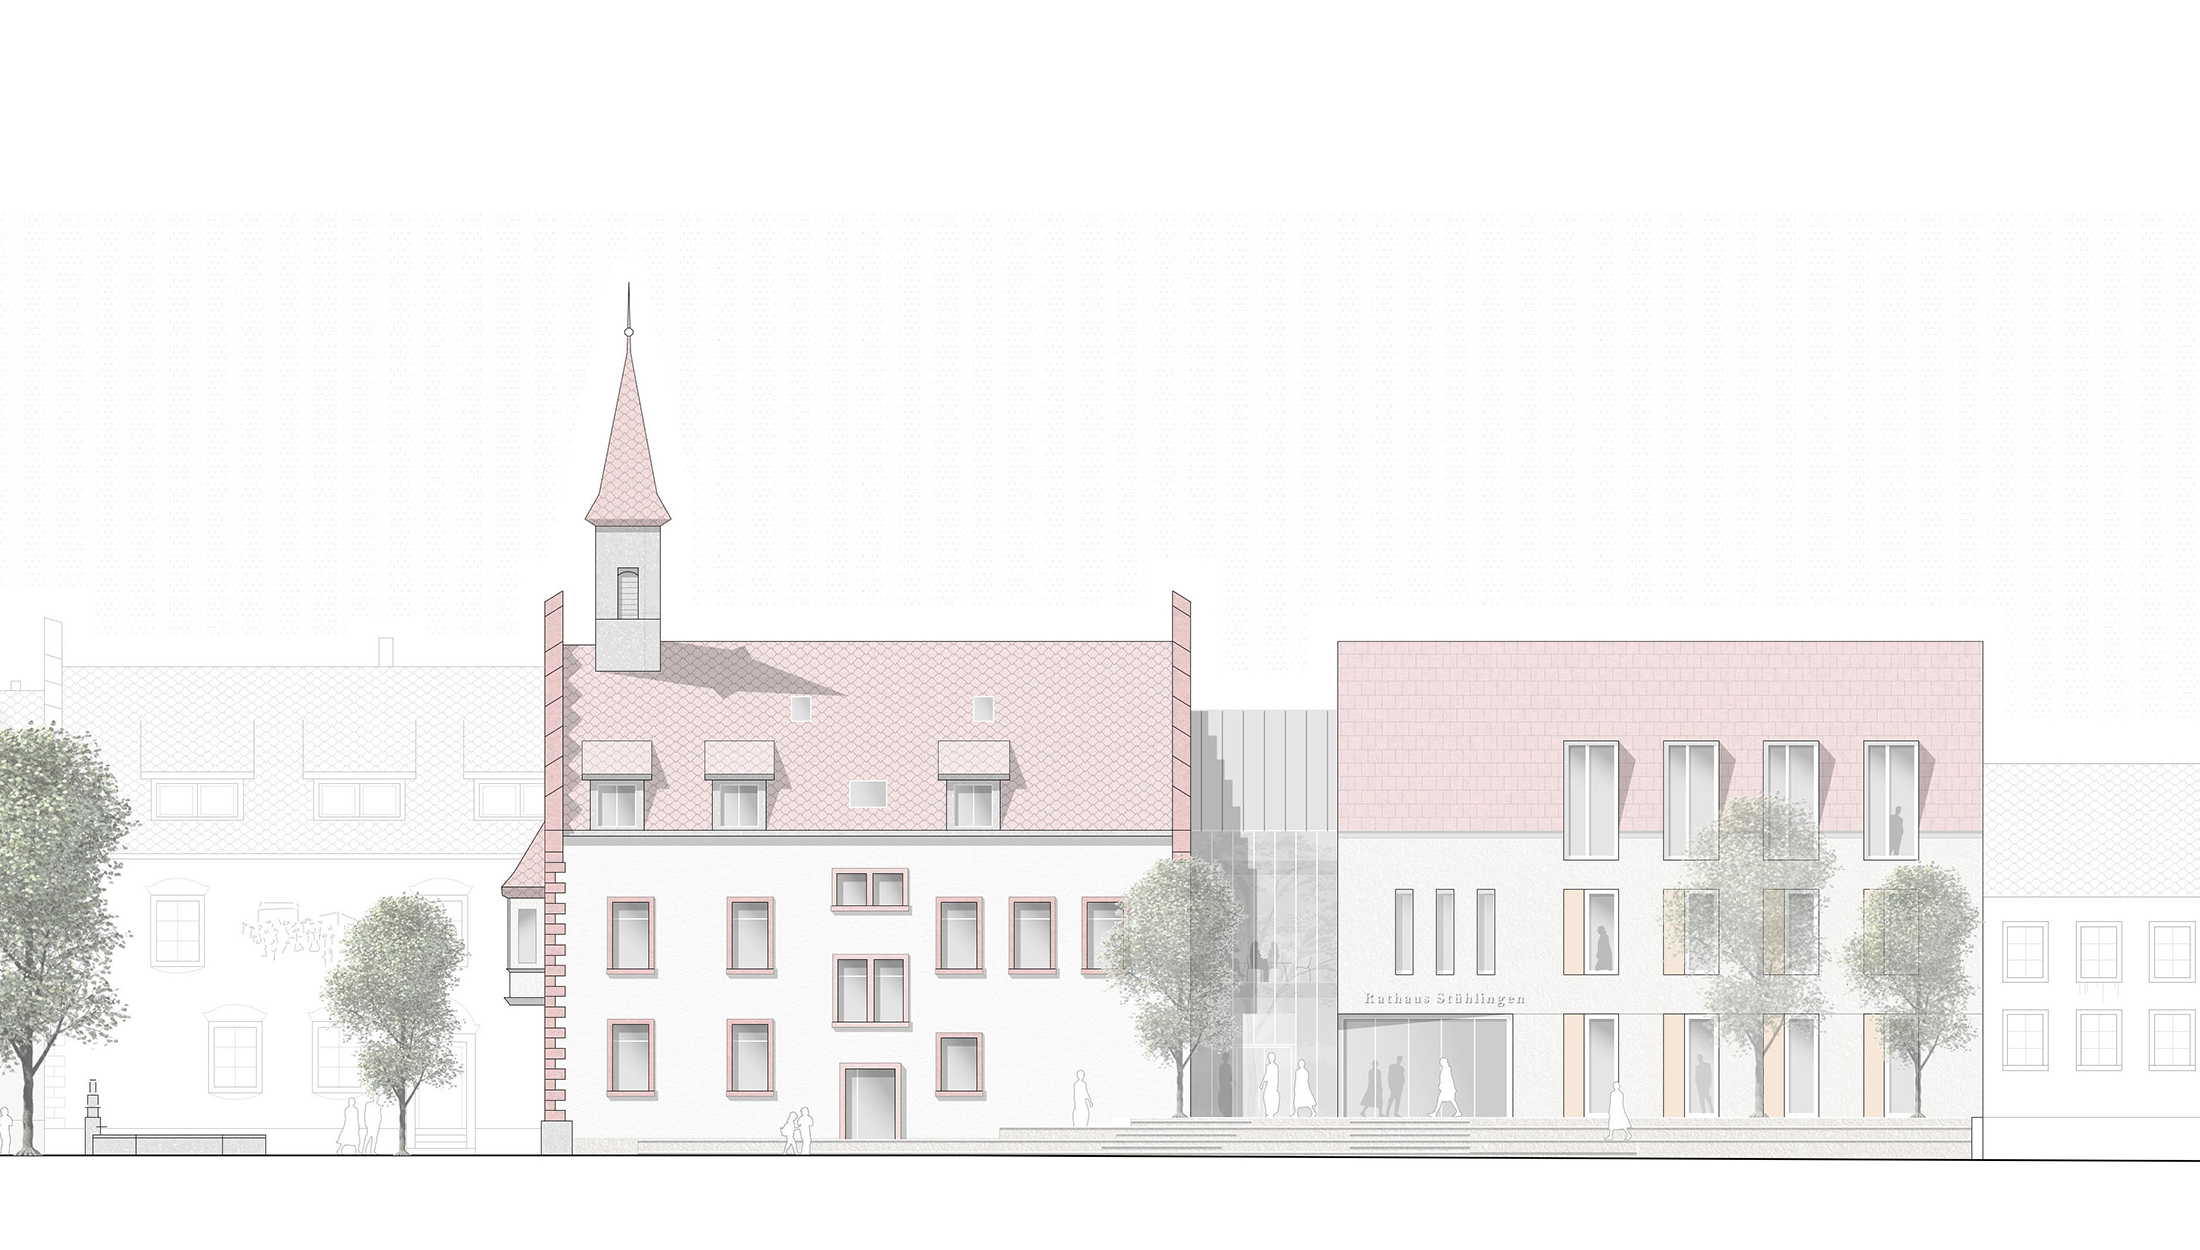 2021, Wettbewerb Erweiterung und Sanierung Rathaus Stühlingen